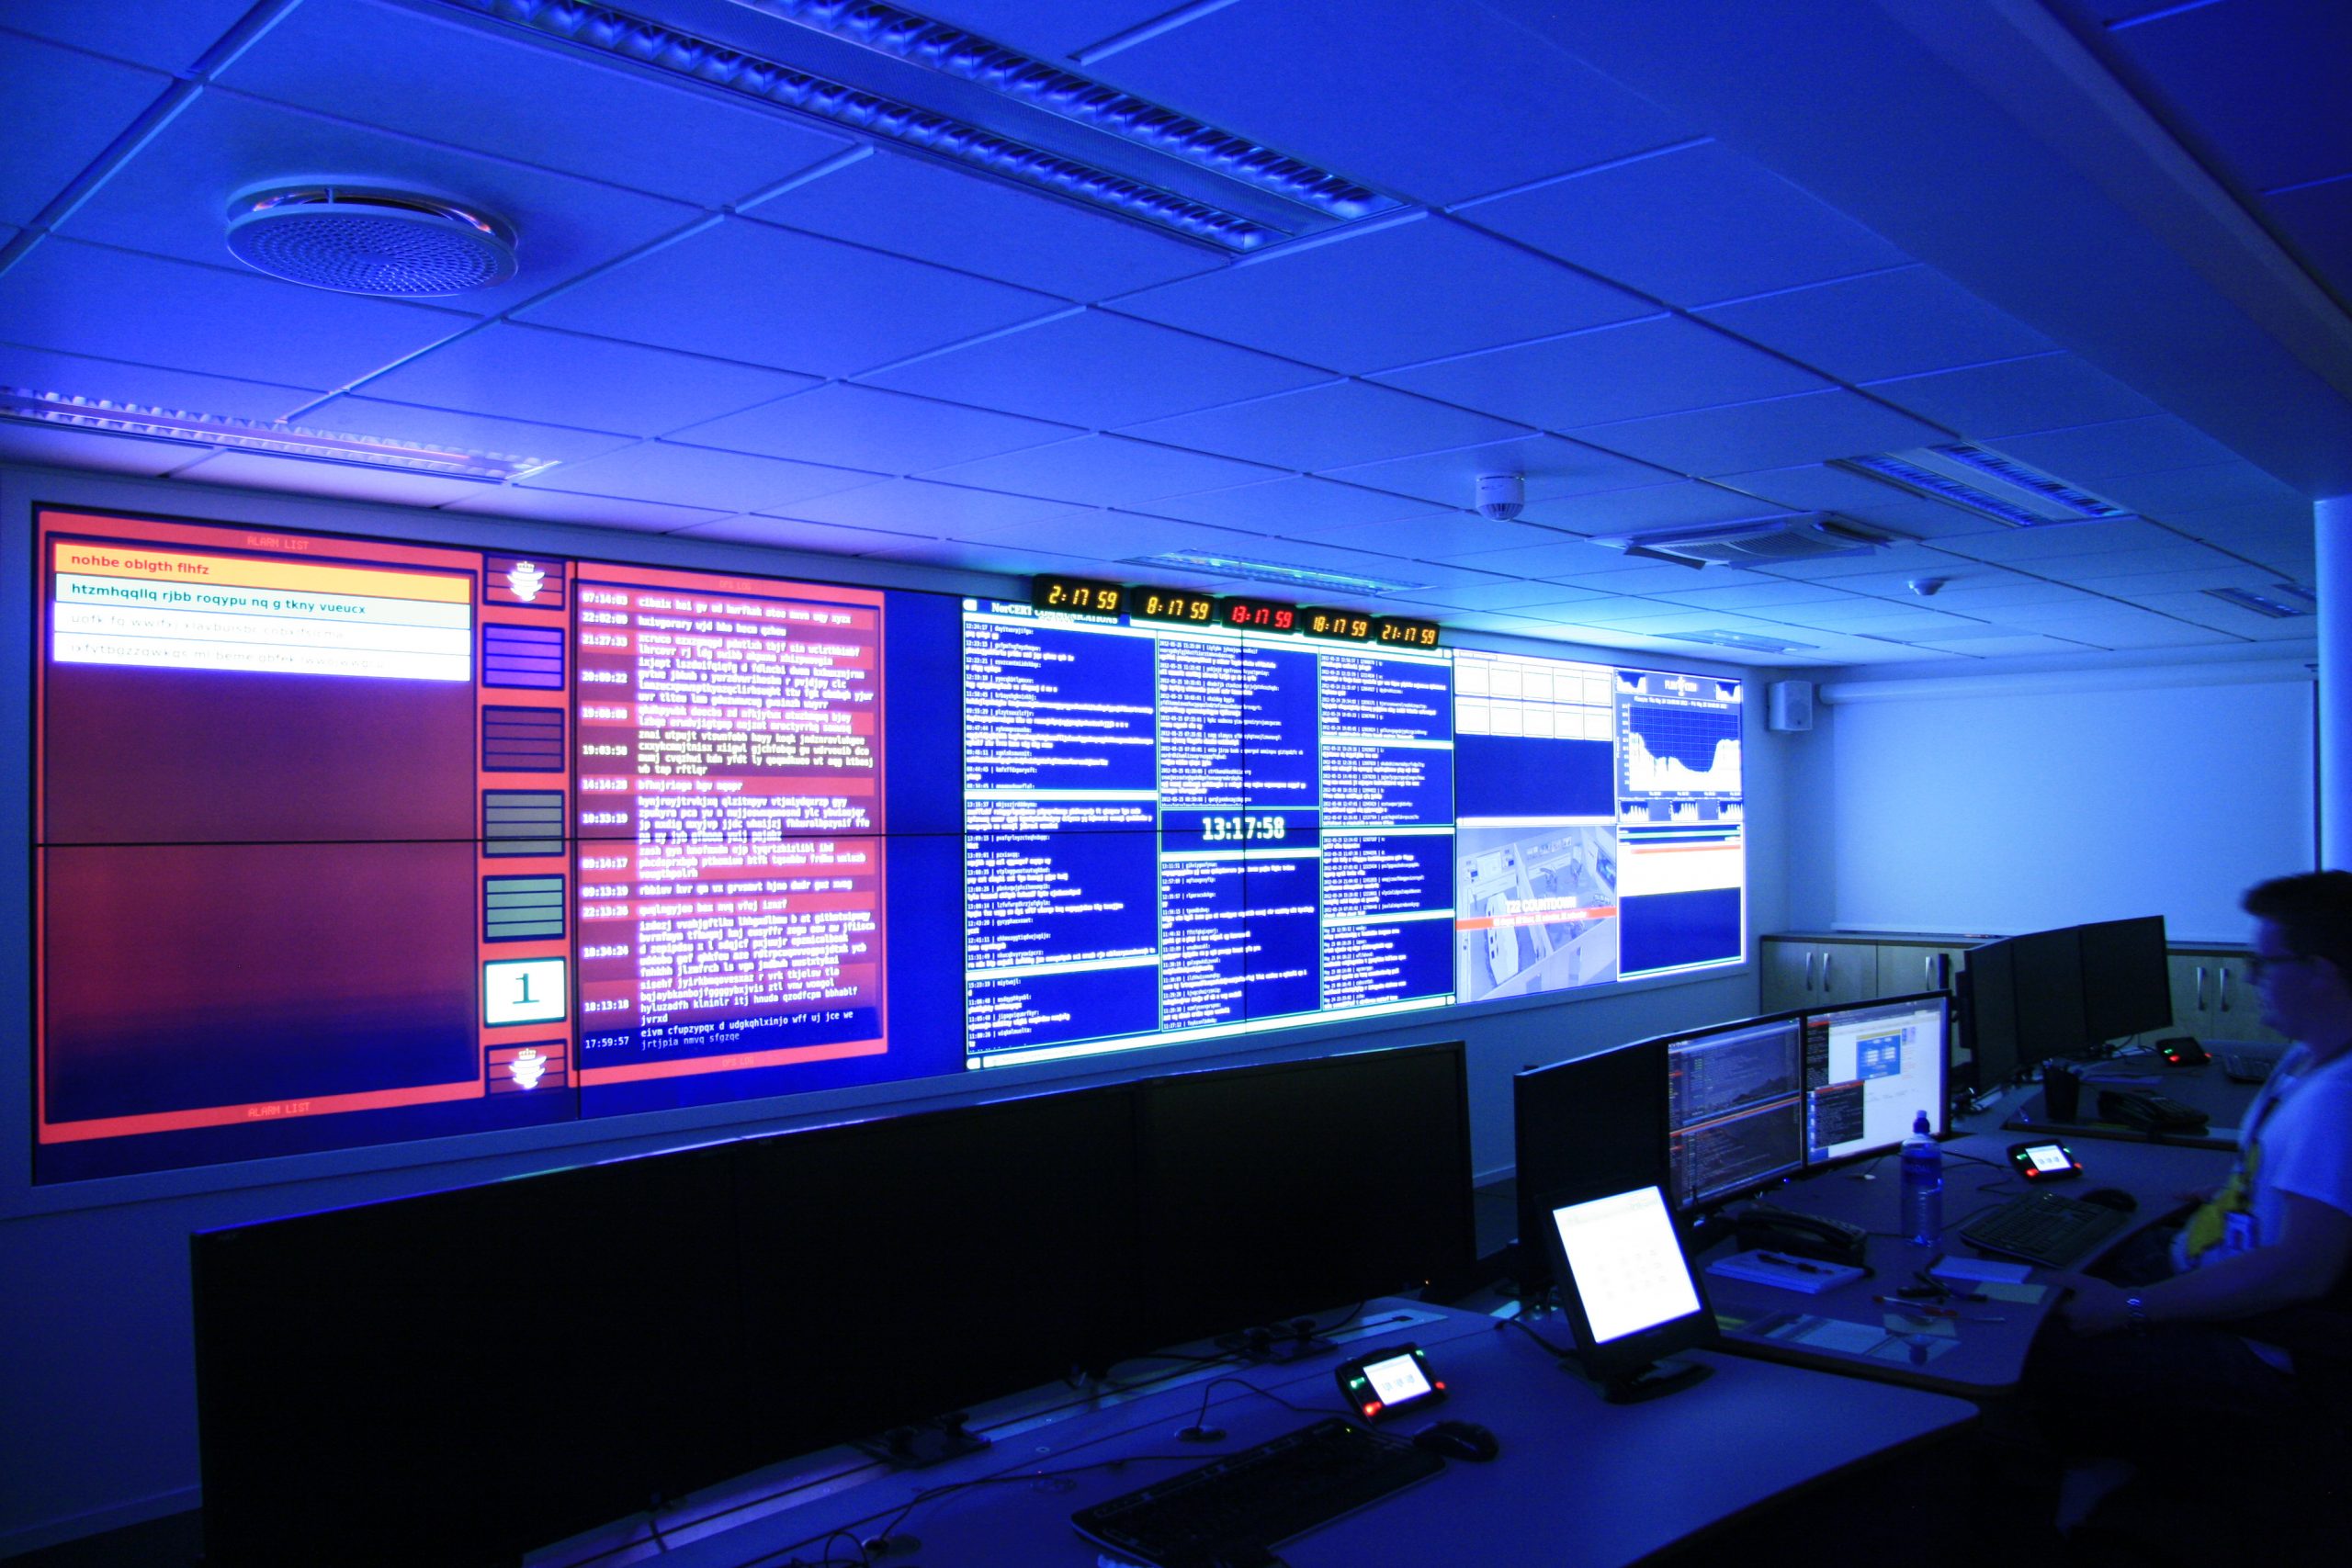 Bildet viser flere skjermer i et mørkt rom, som lyses opp i blått fra de prosjekterte dataskjermene. I midten sees en nedtellingsklokke.